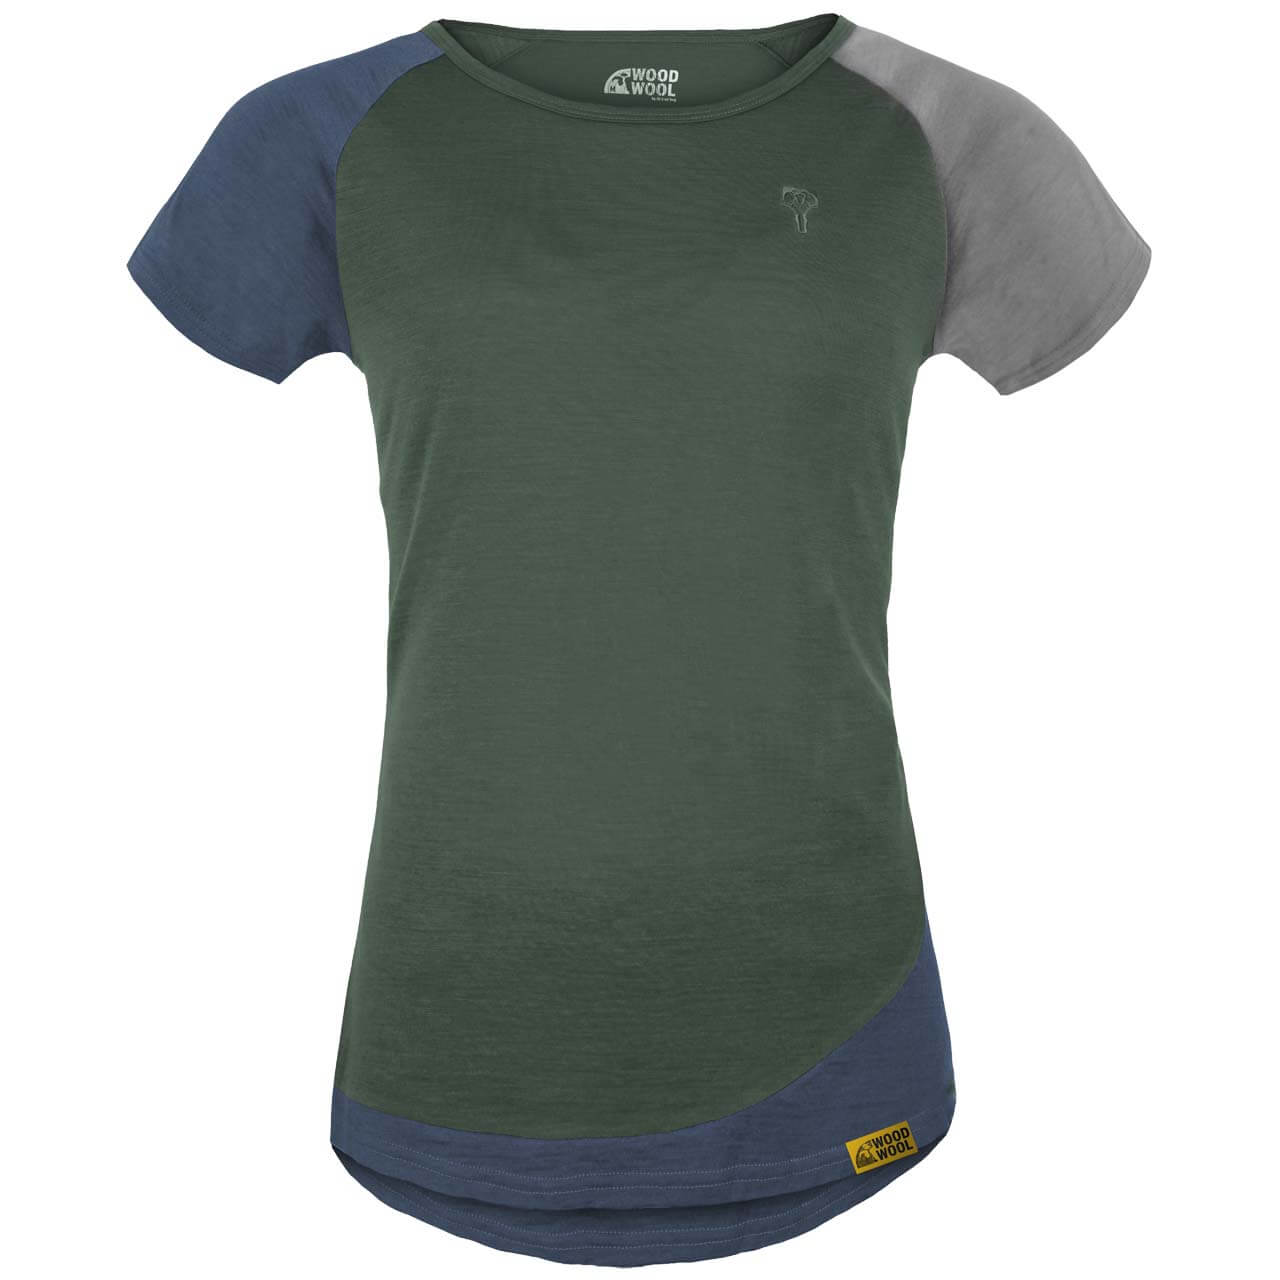 Grüezi Bag WoodWool Janeway T-Shirt - Bayberry Green, L von Grüezi Bag